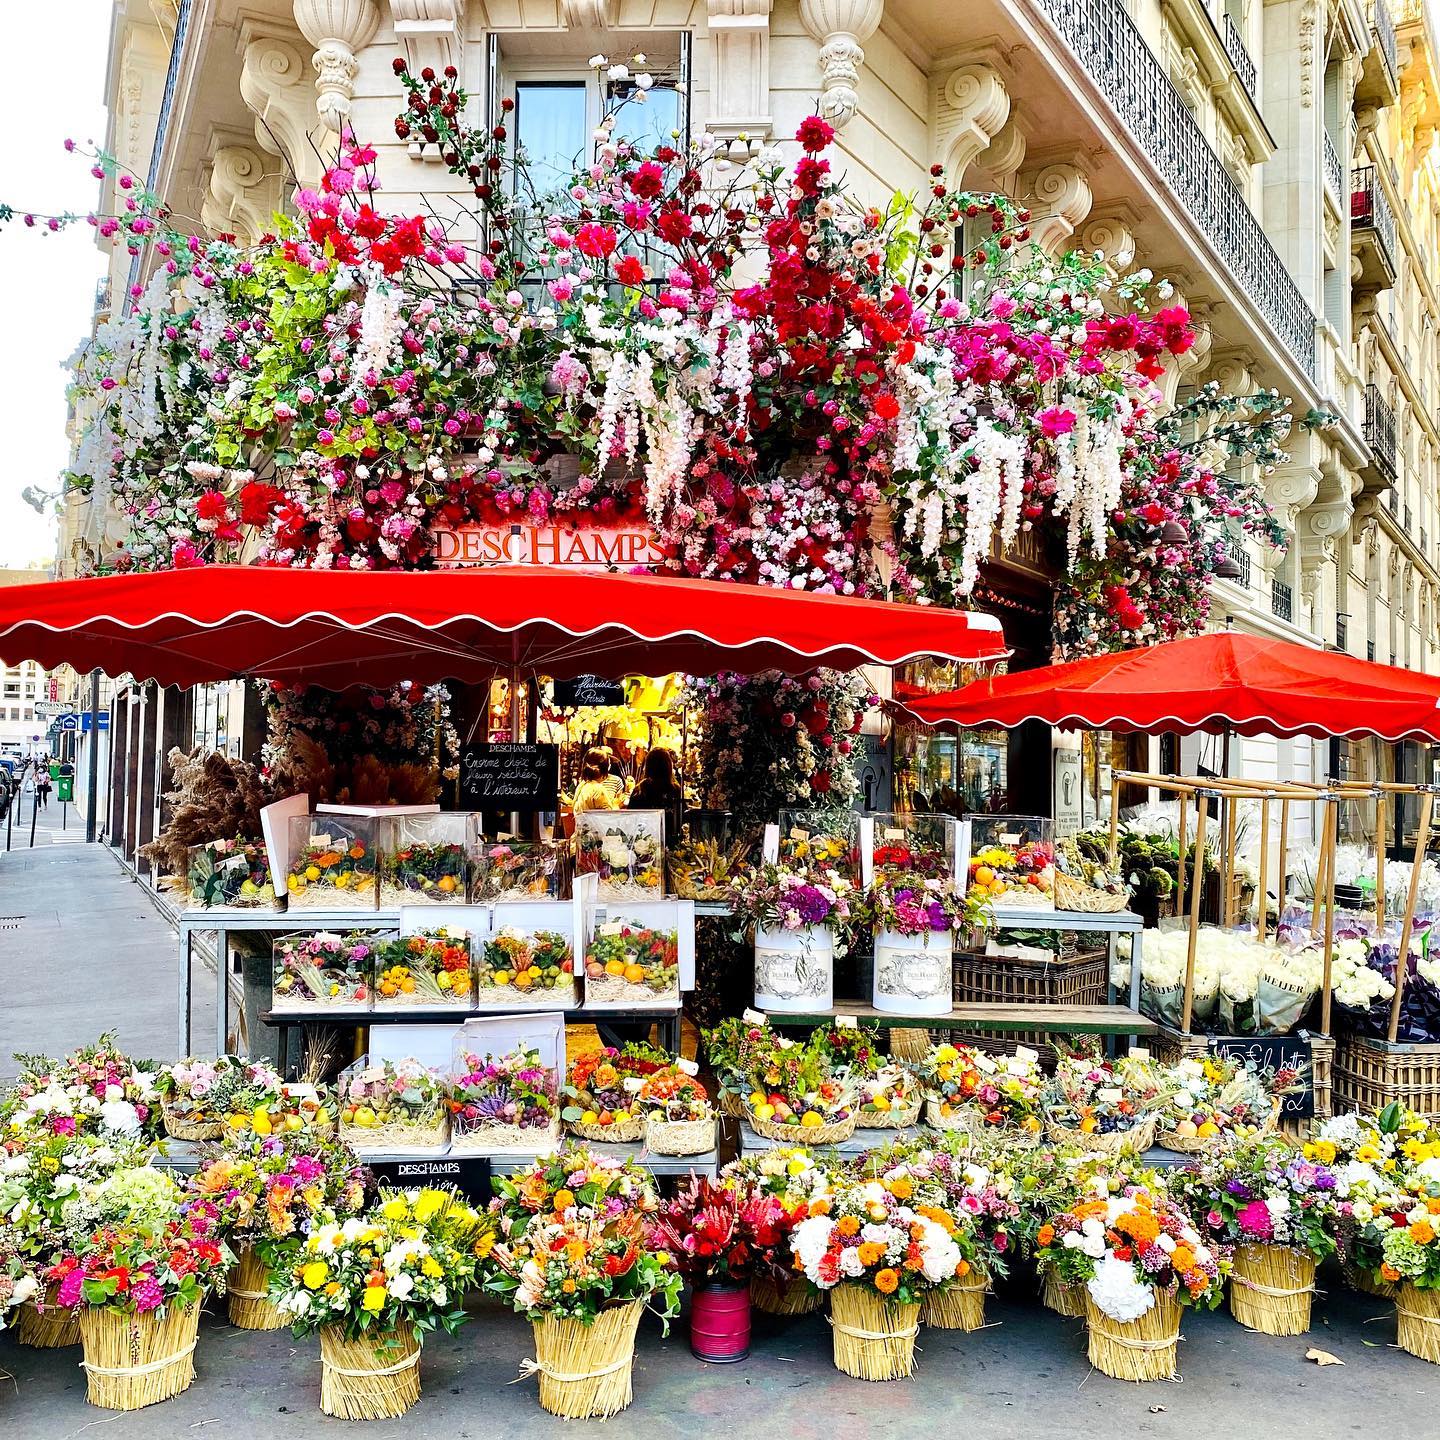 Deschamps florist storefront Paris - on Thursd